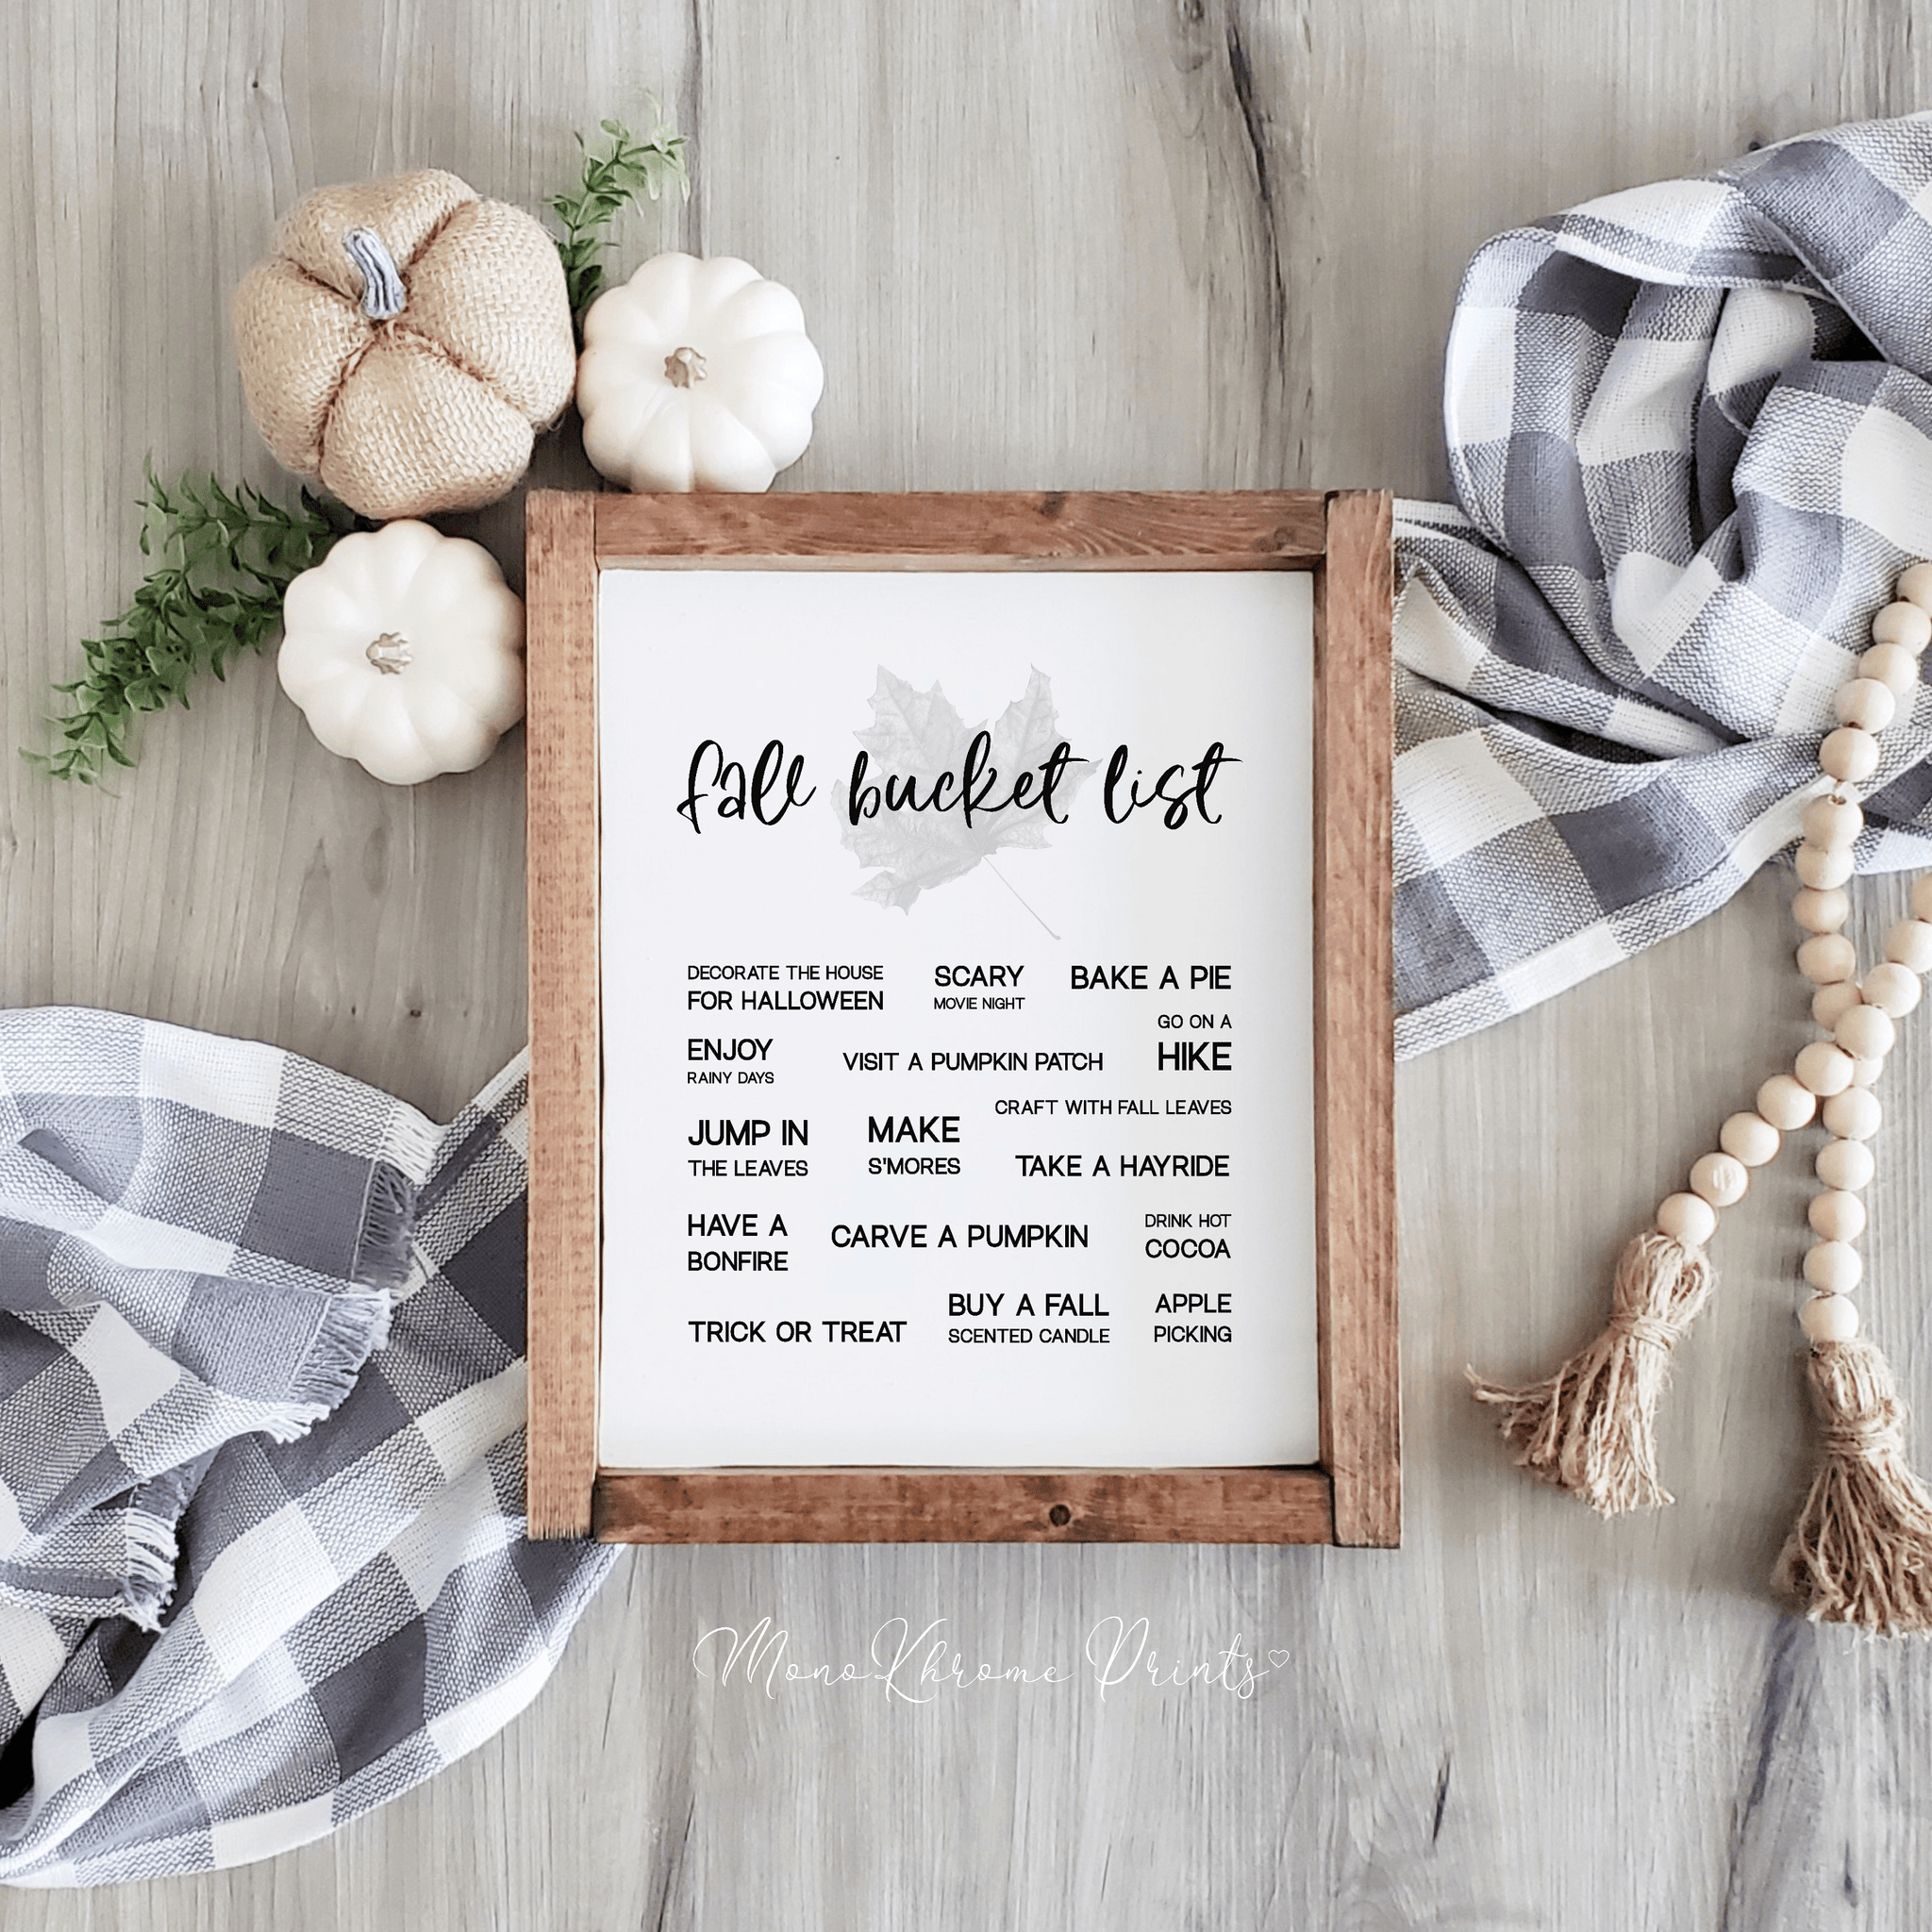 « Fall bucket list » est une affiche en anglais représentant une liste de choses à faire durant cette belle saison qu'est l'automne. 